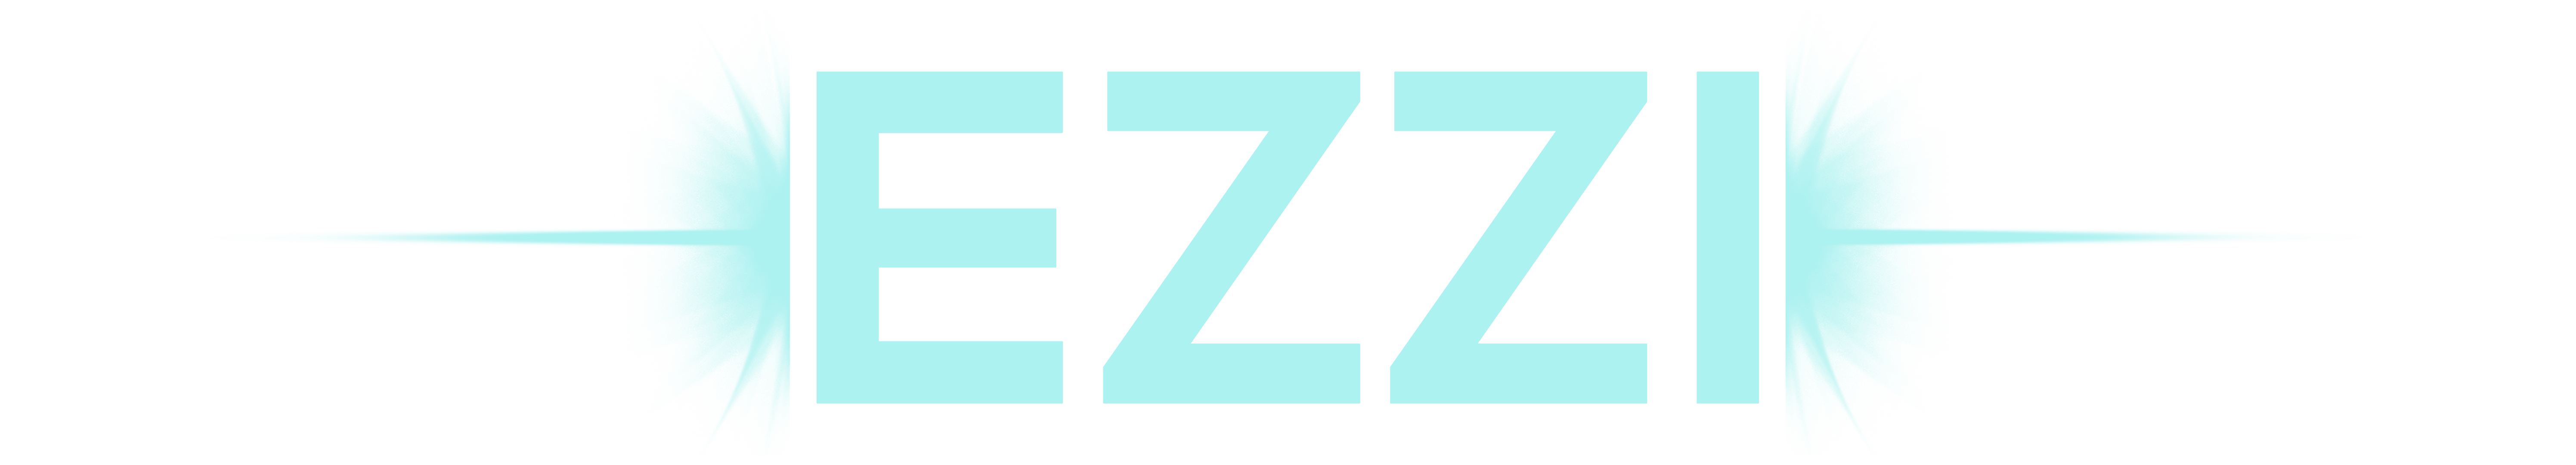 ezzi-7433